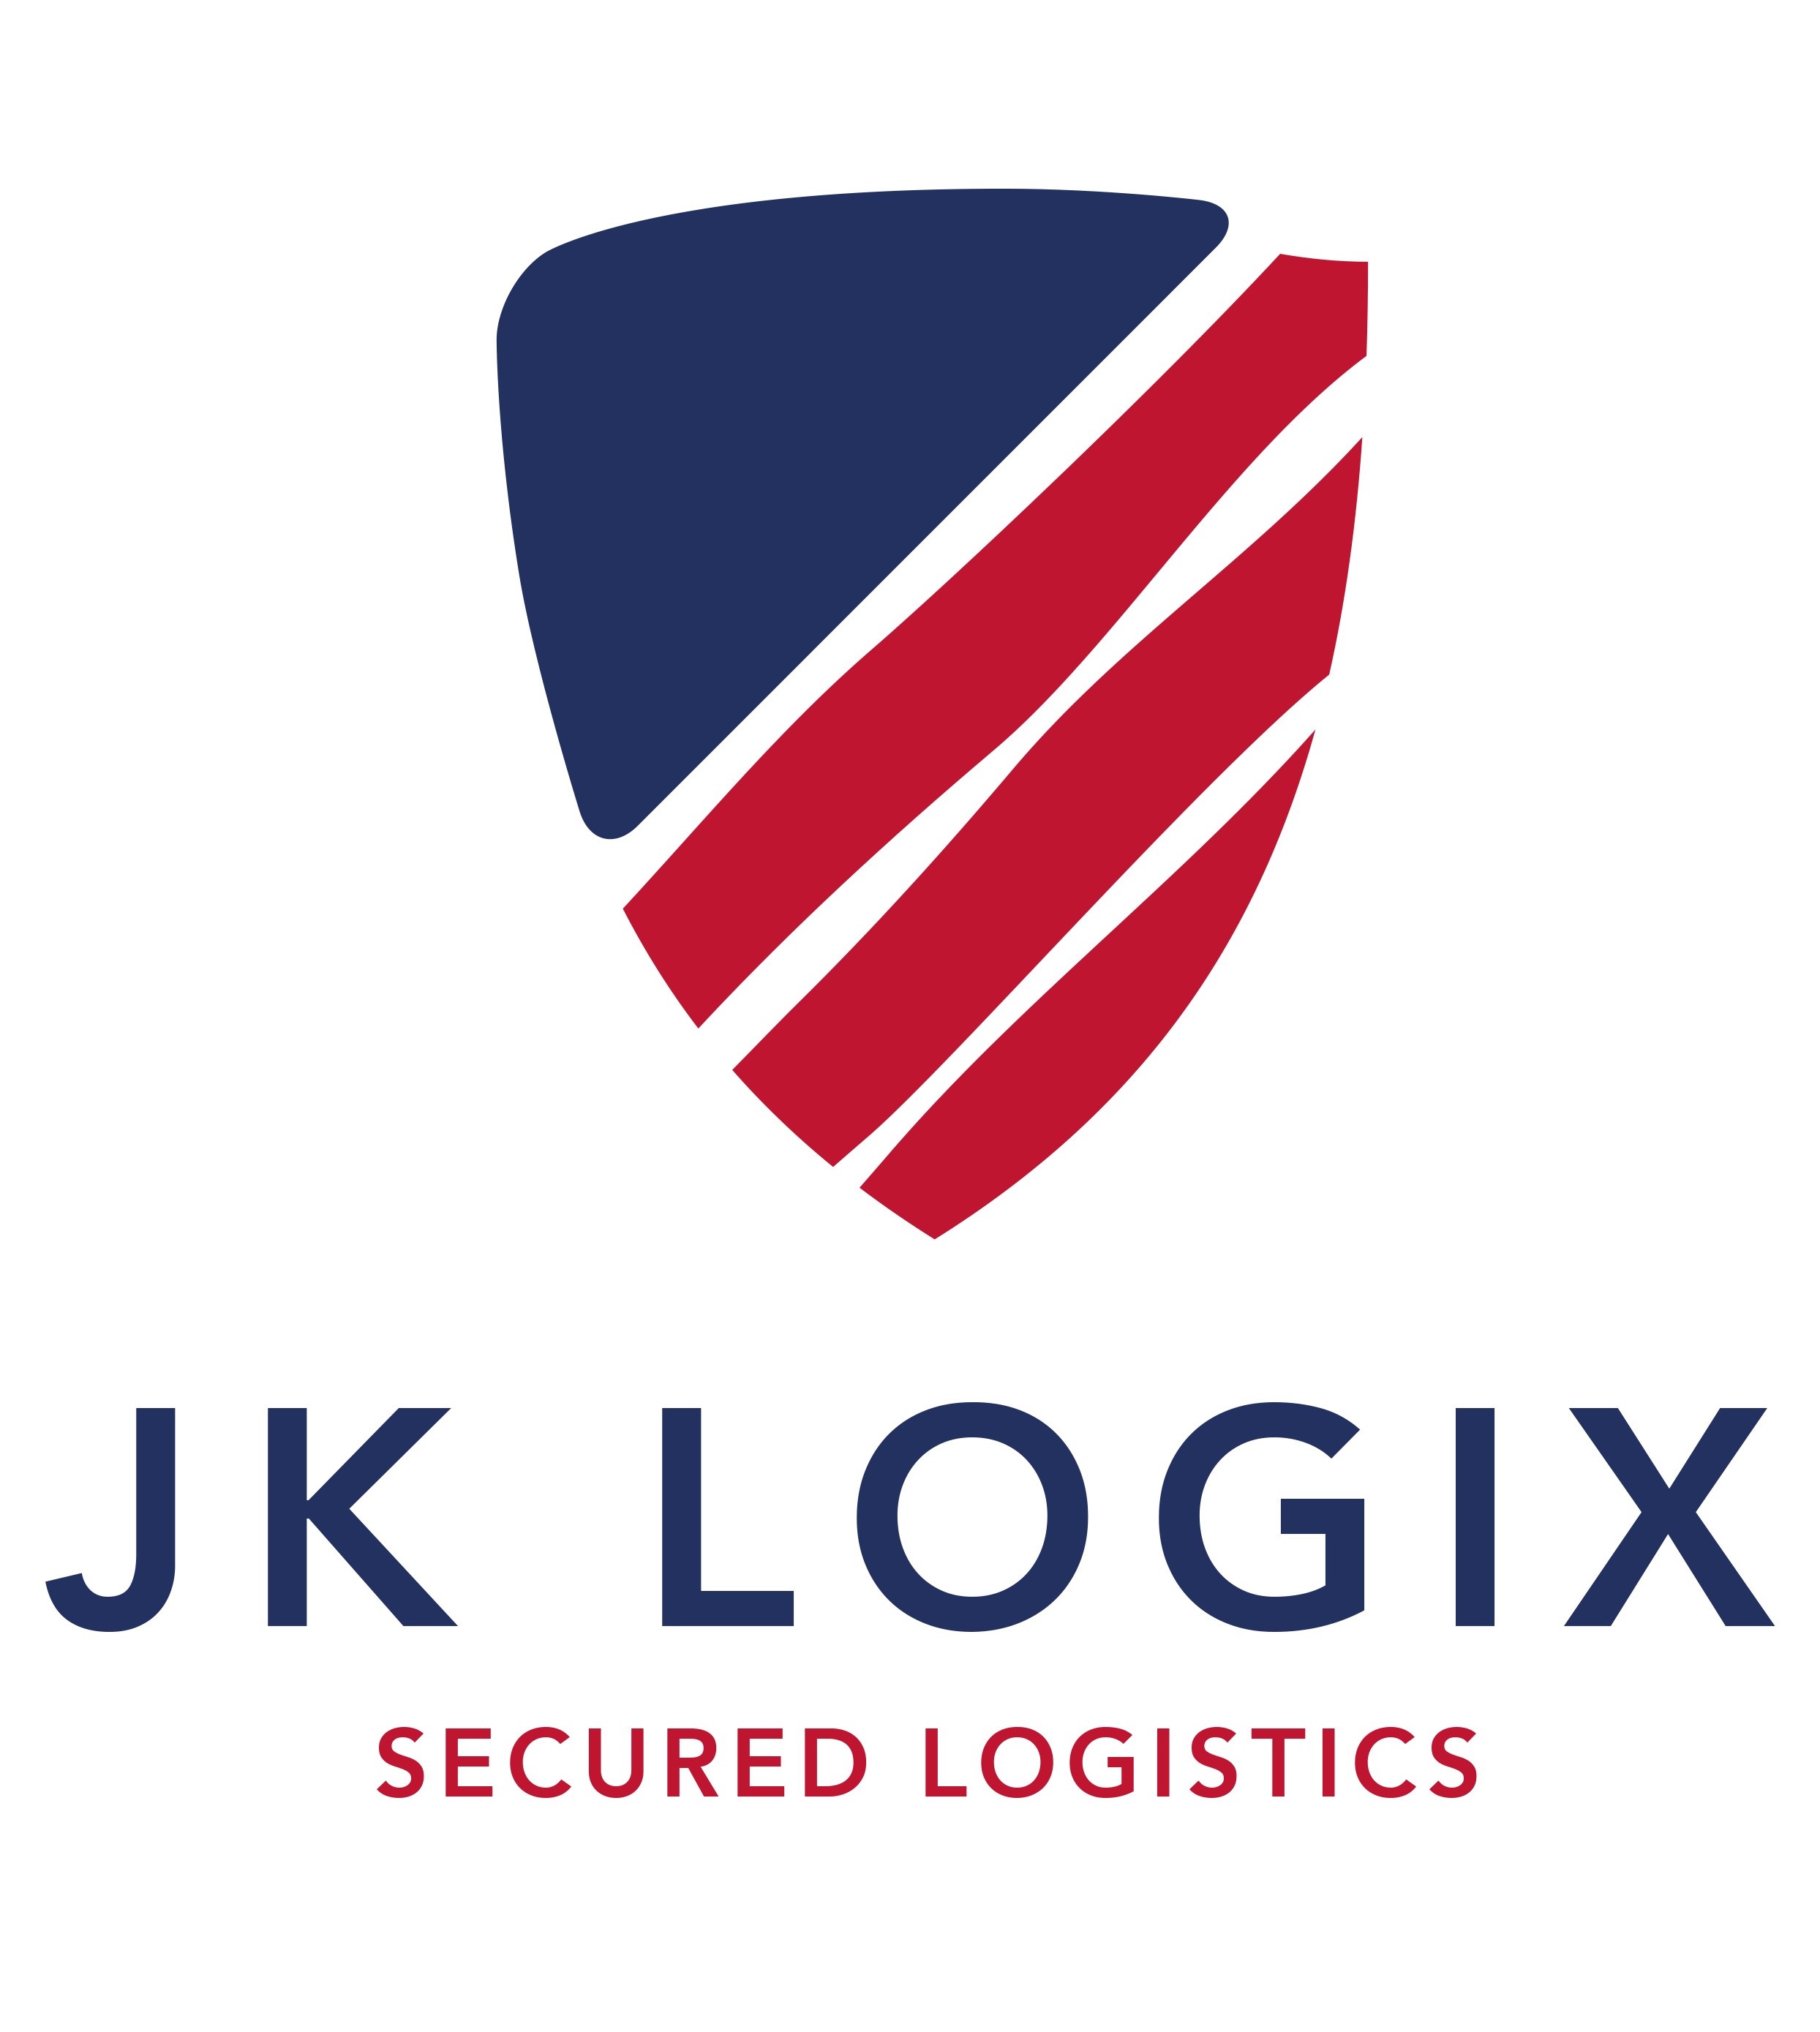 JK Logix Secured Logistics